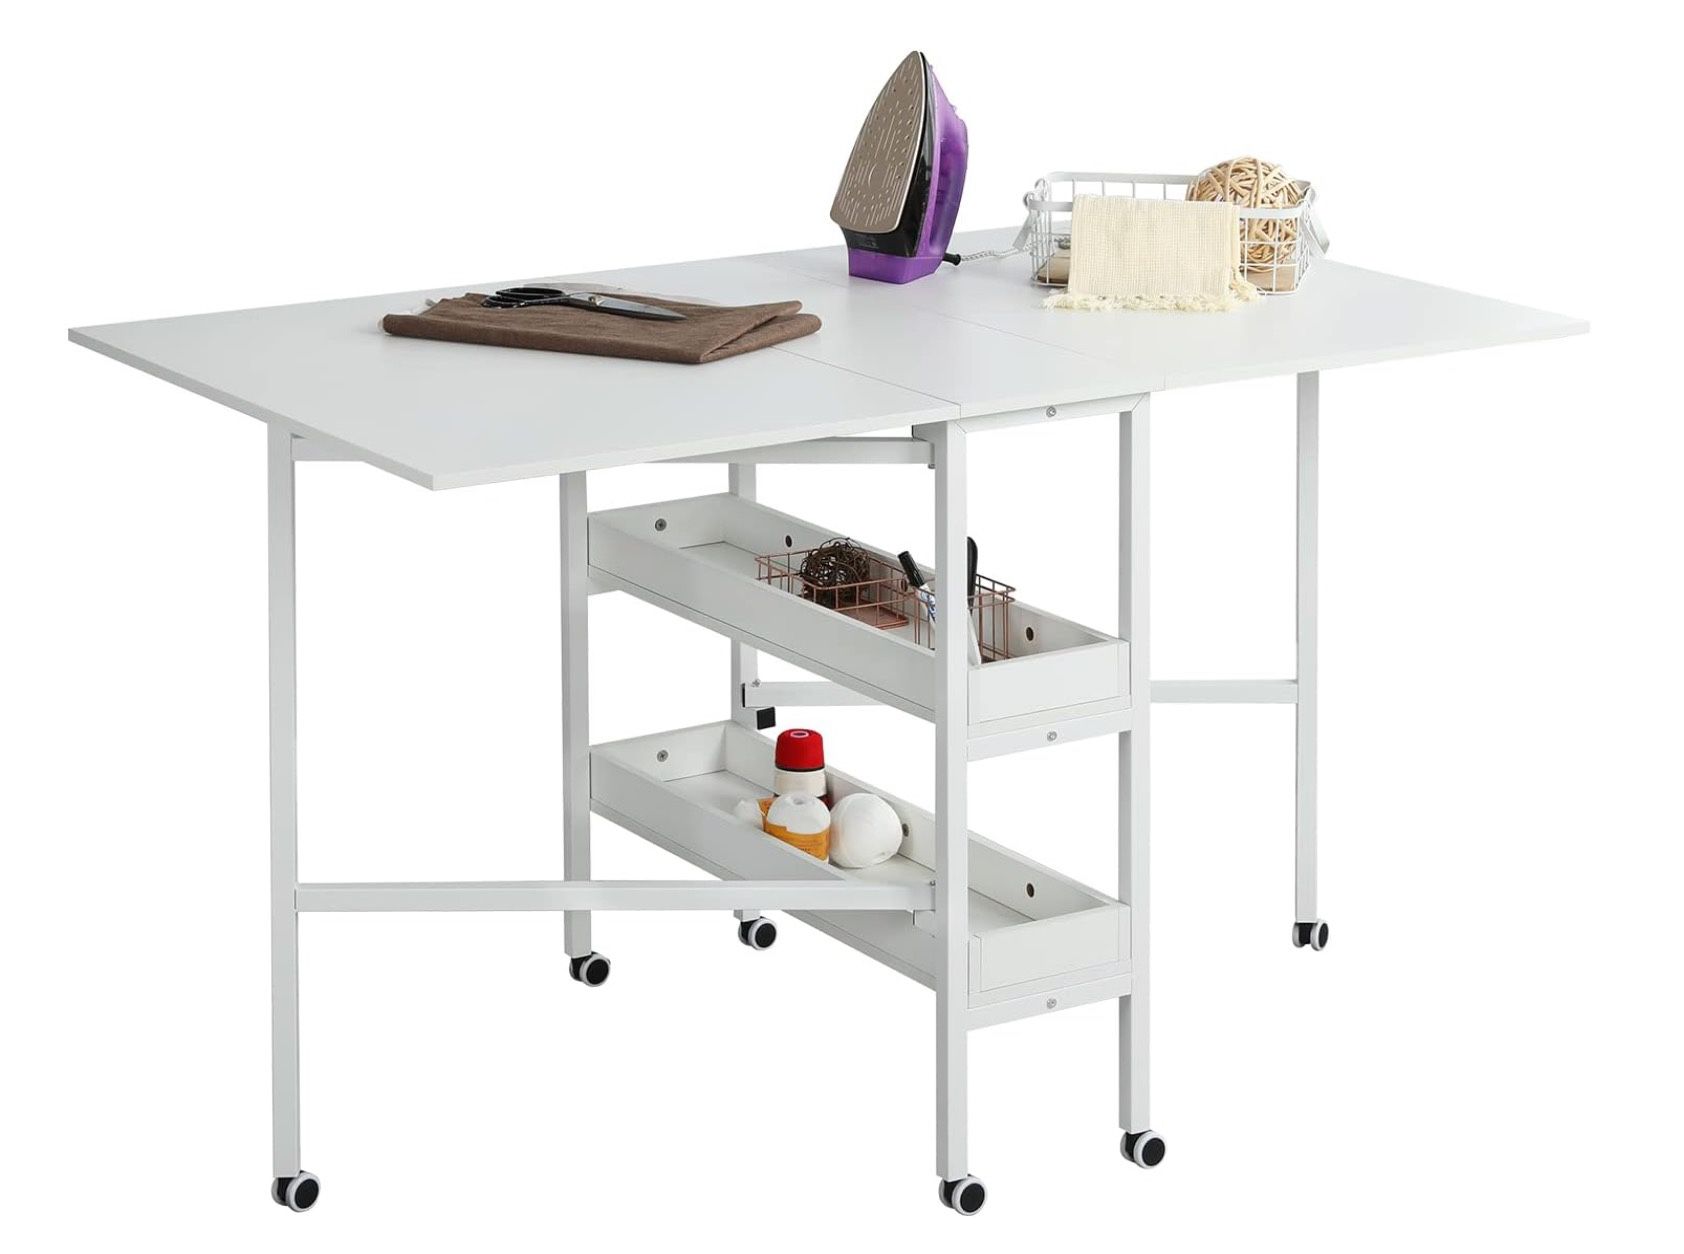 MELLCOM Home Hobby Craft Table with Storage Shelves